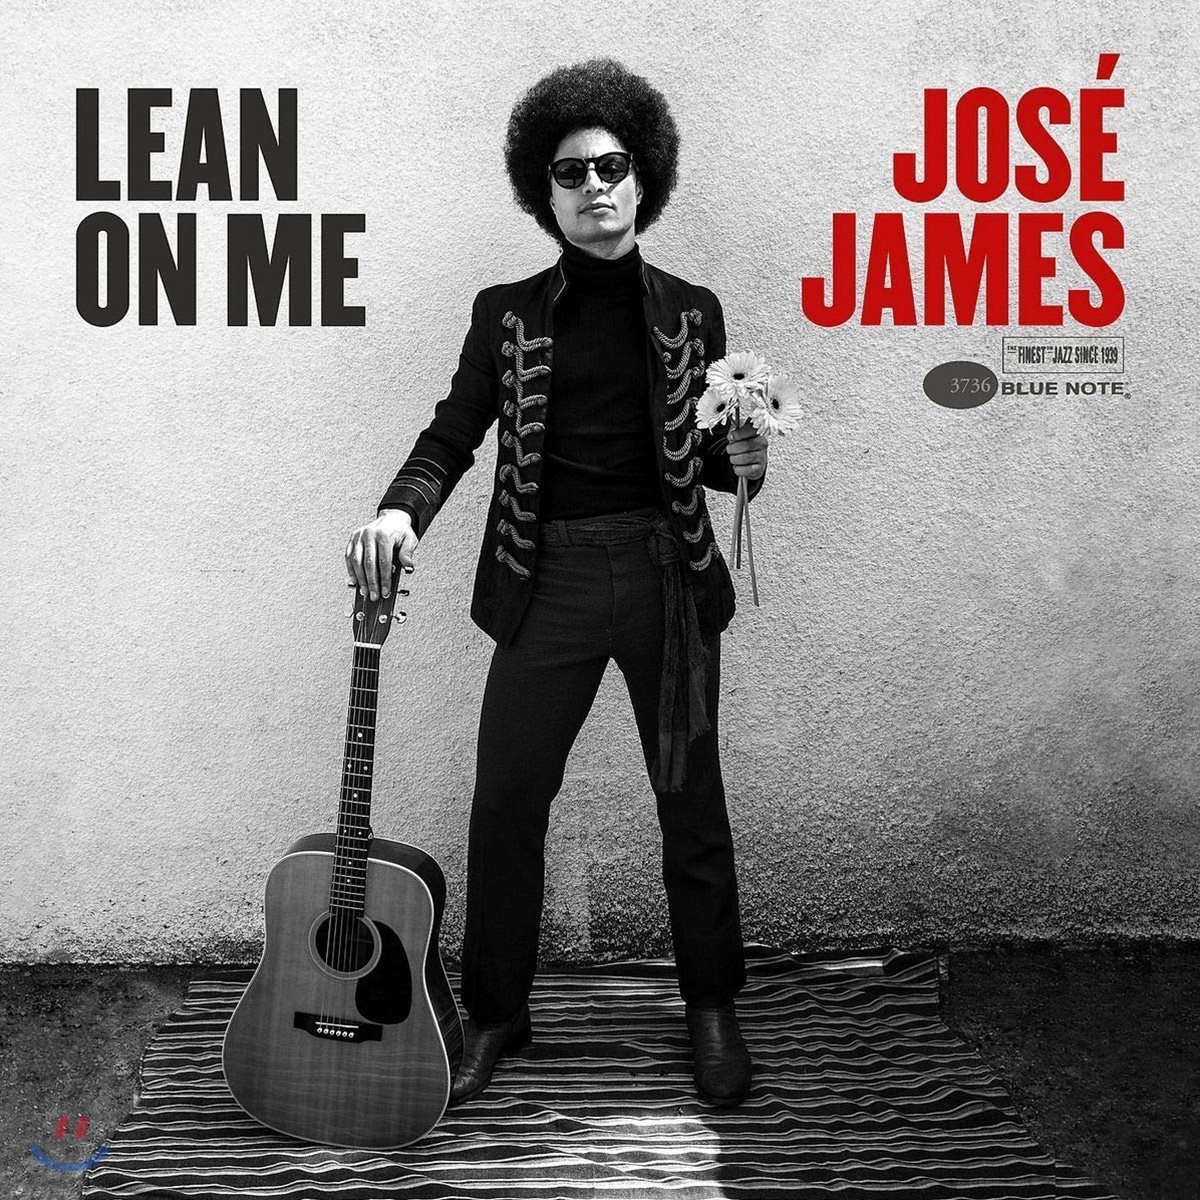 Jose James (호세 제임스) - Lean On Me [2LP]